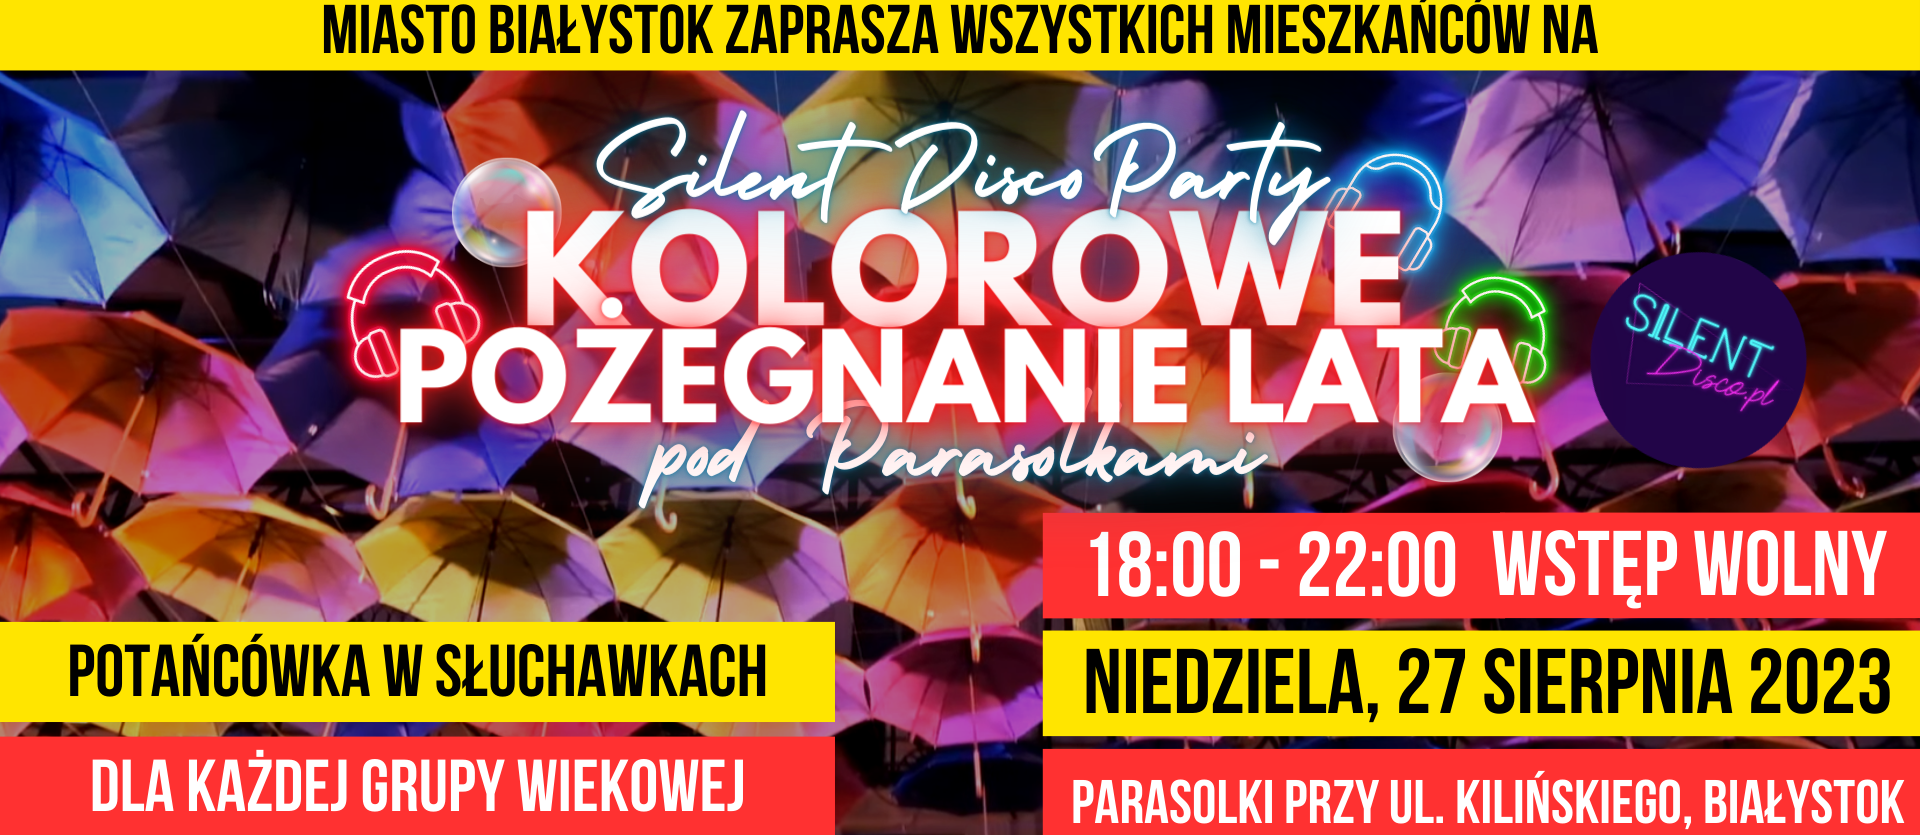 Plakat: Silent Disco Party Kolorowe Pożegnanie Lata pod Parasolkami, 27.08.2023 r w godz. 18:00-22:00. Wstęp wolny